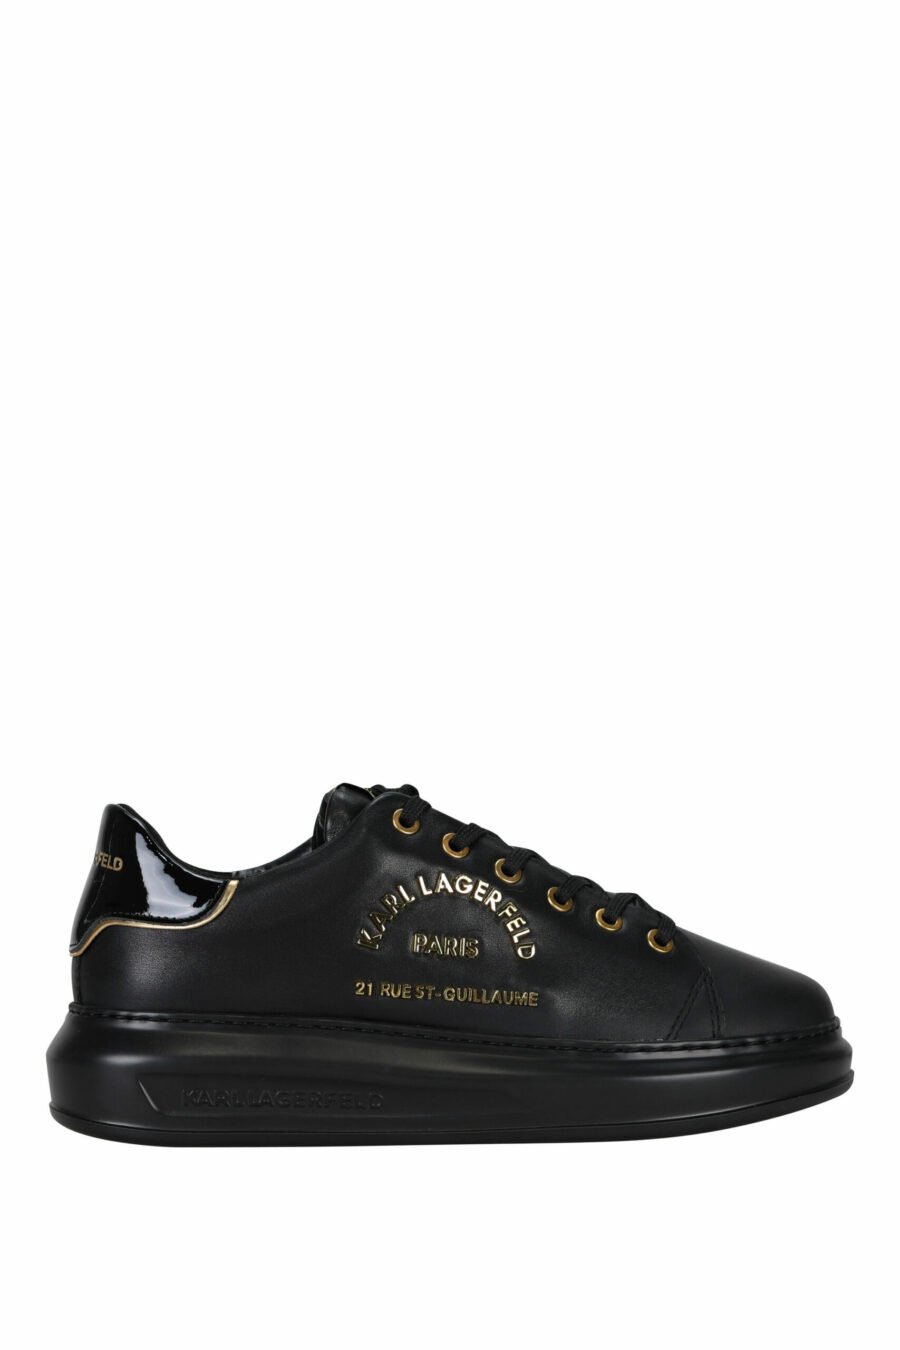 Zapatillas negras con logo "rue st guillaume" dorado en metal - 5059529362699 scaled